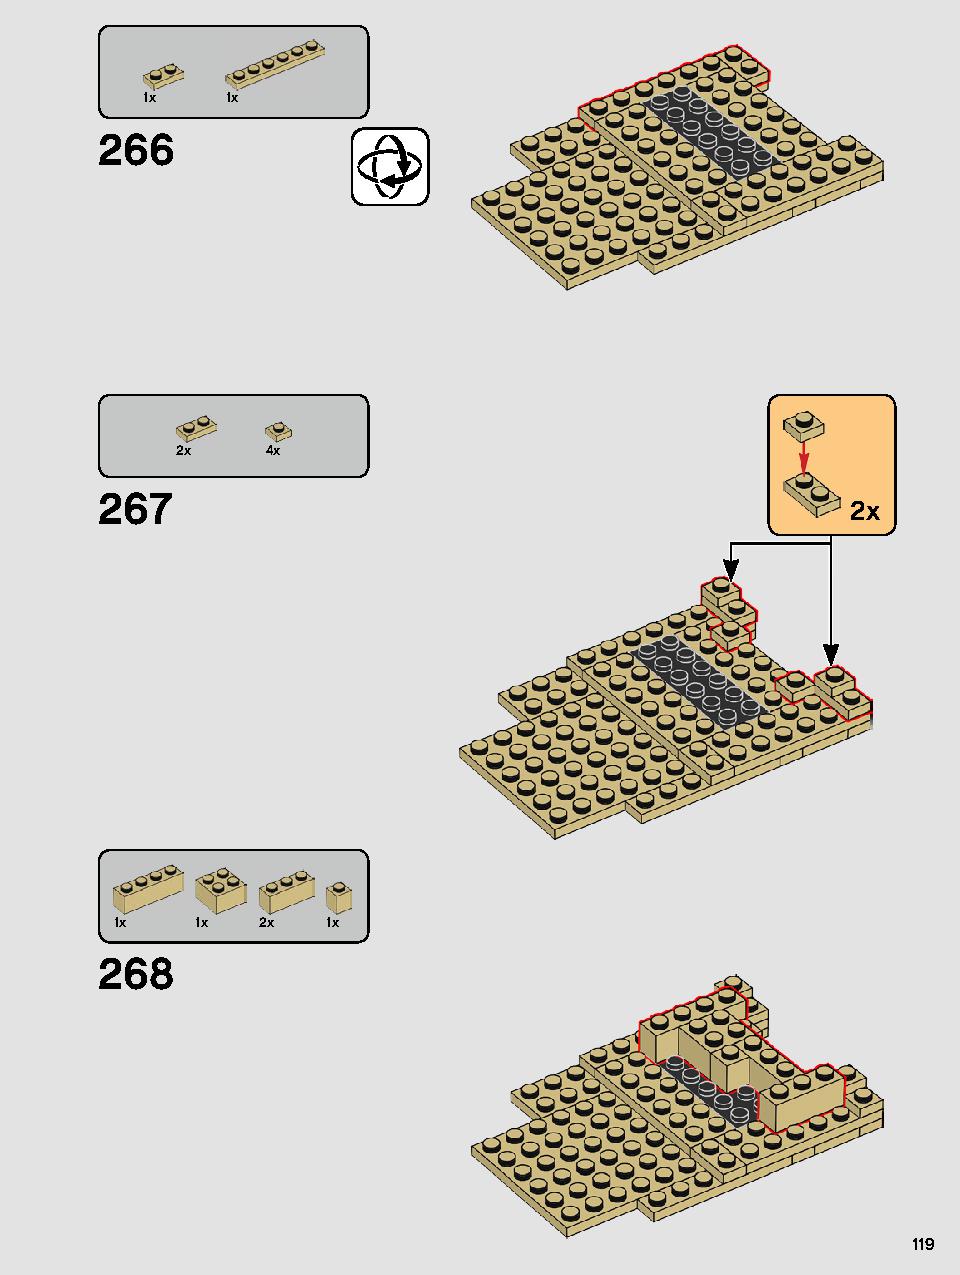 ヨーダ™ 75255 レゴの商品情報 レゴの説明書・組立方法 119 page